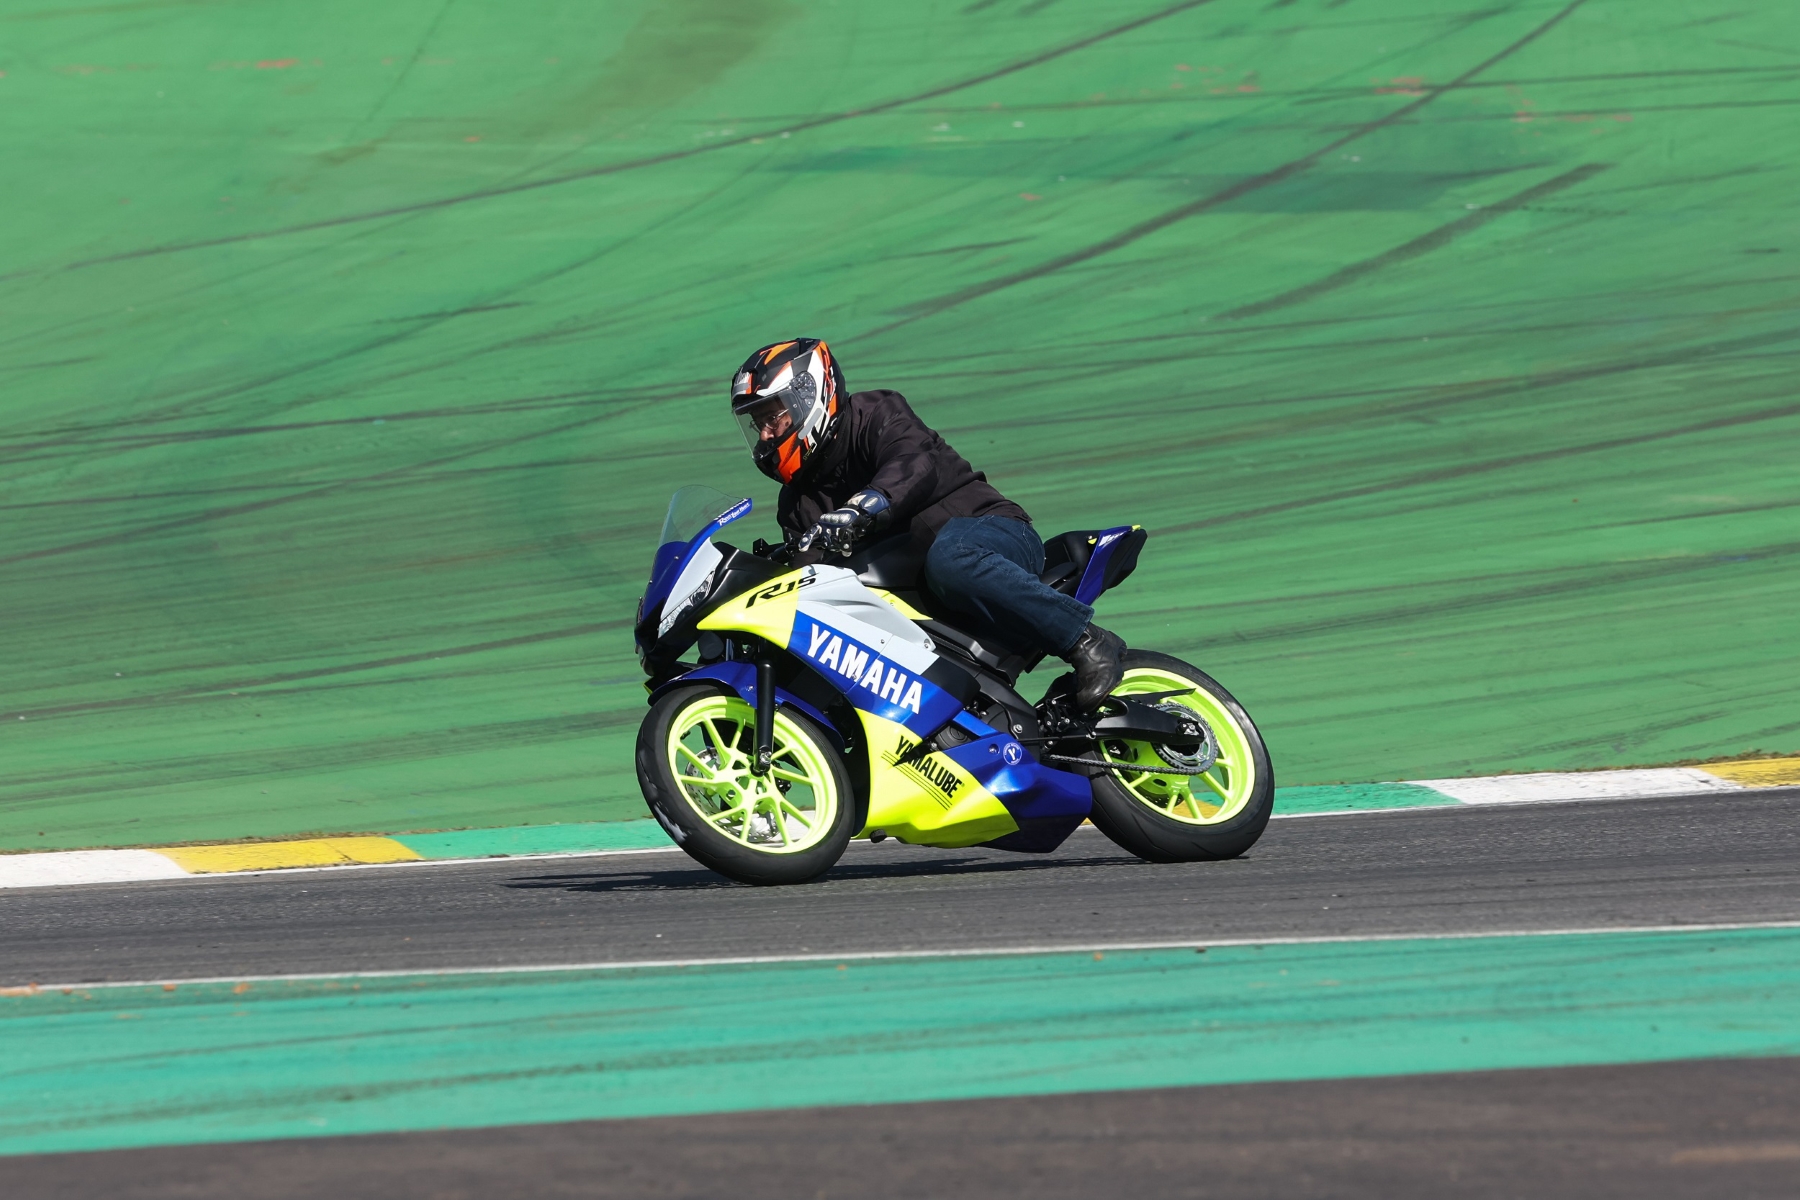 Autódromo de Interlagos recebe corrida de motos e show